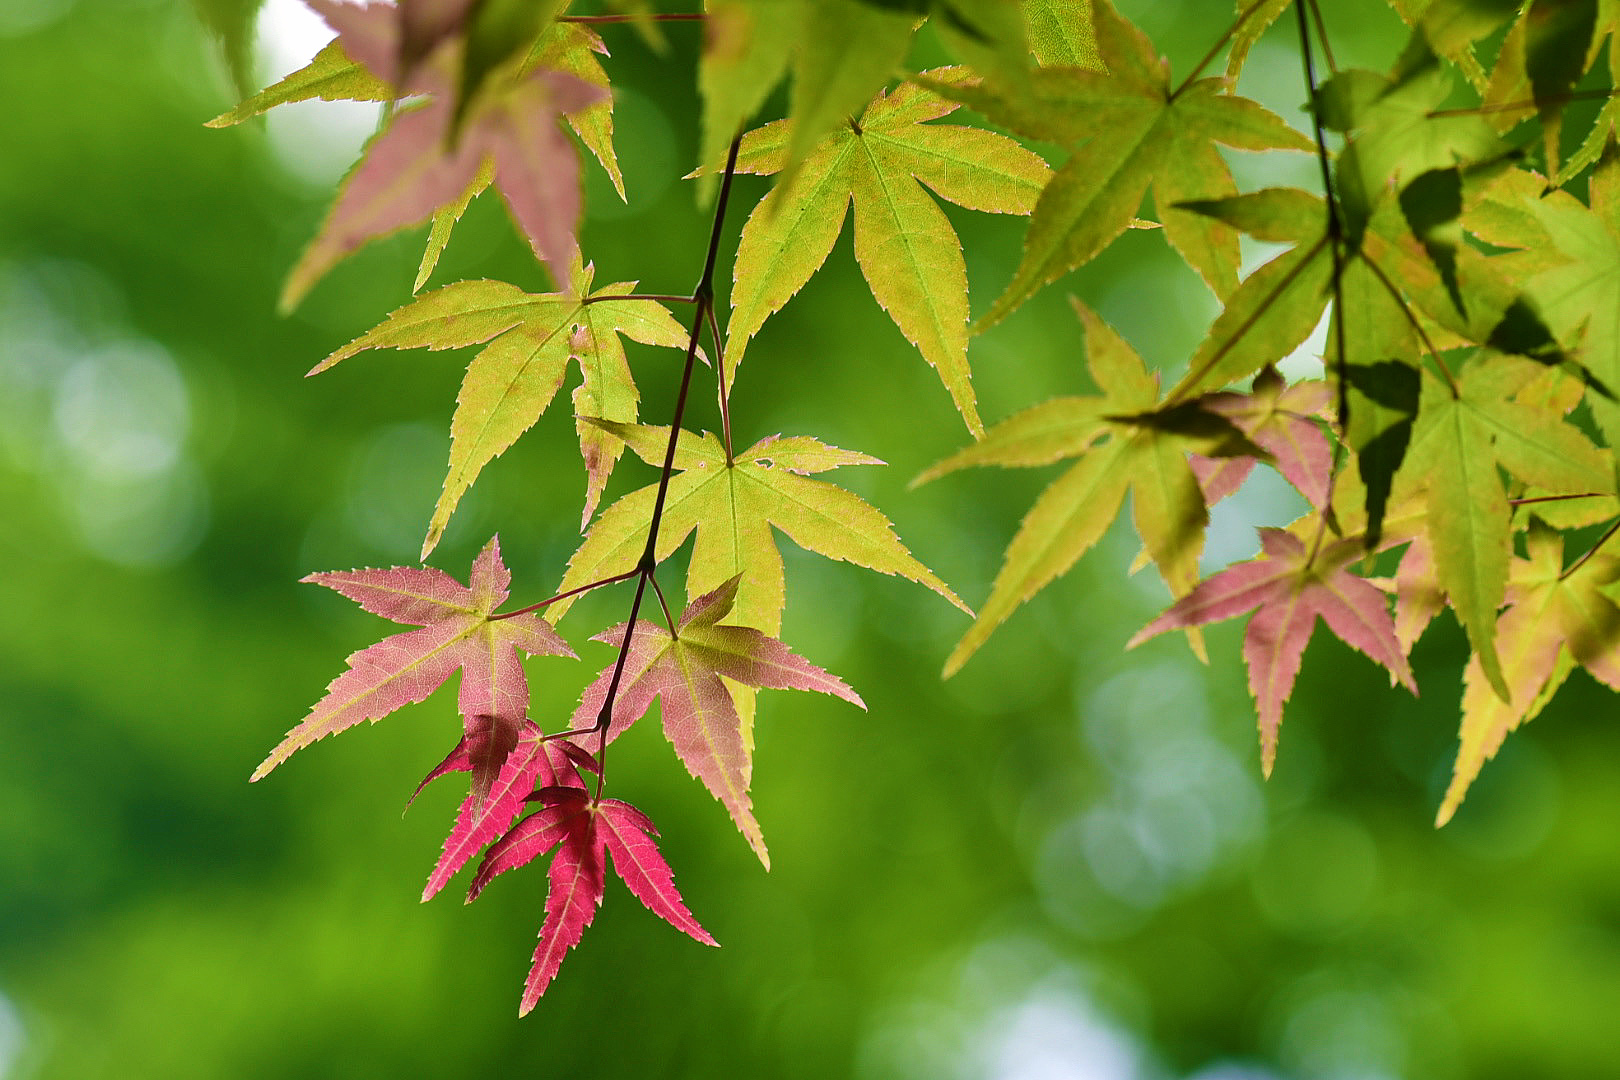 秋天红叶是鸡爪槭的叶子变红,它在春夏两季一般是绿色的,只有到了秋季